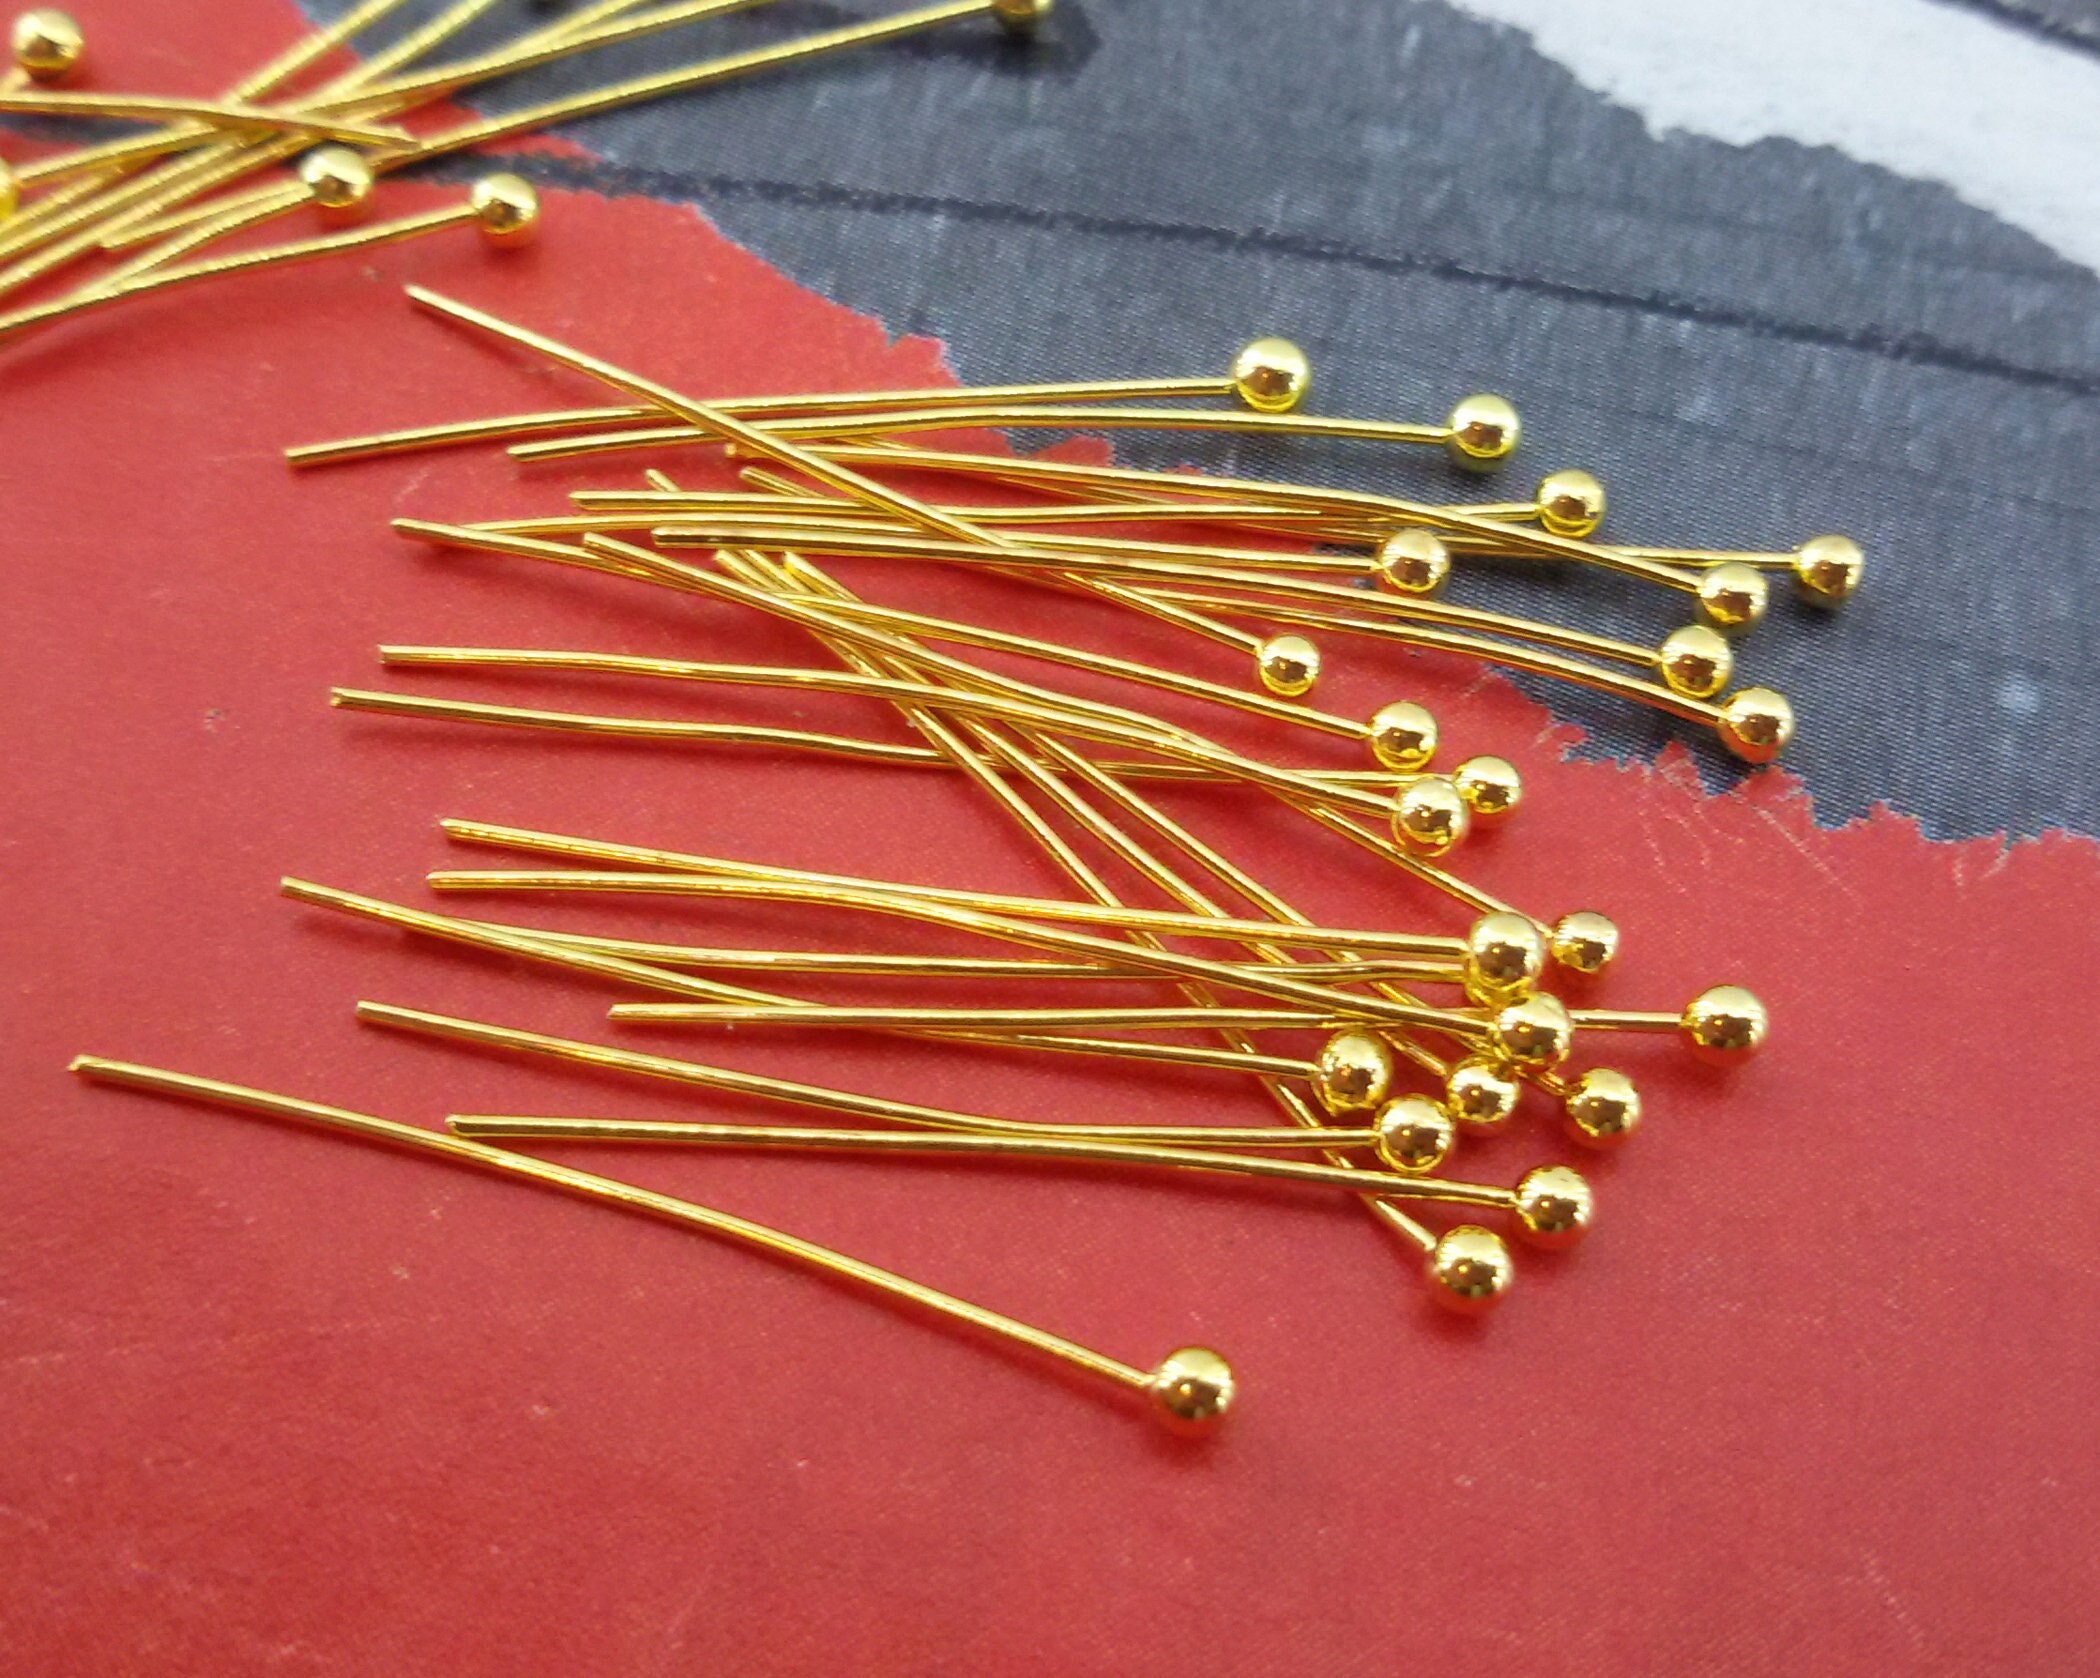 Metal Ball Head Pins Jewelry Making  Ball Head Pins Jewellery Making - 0.7  40mm 14k - Aliexpress